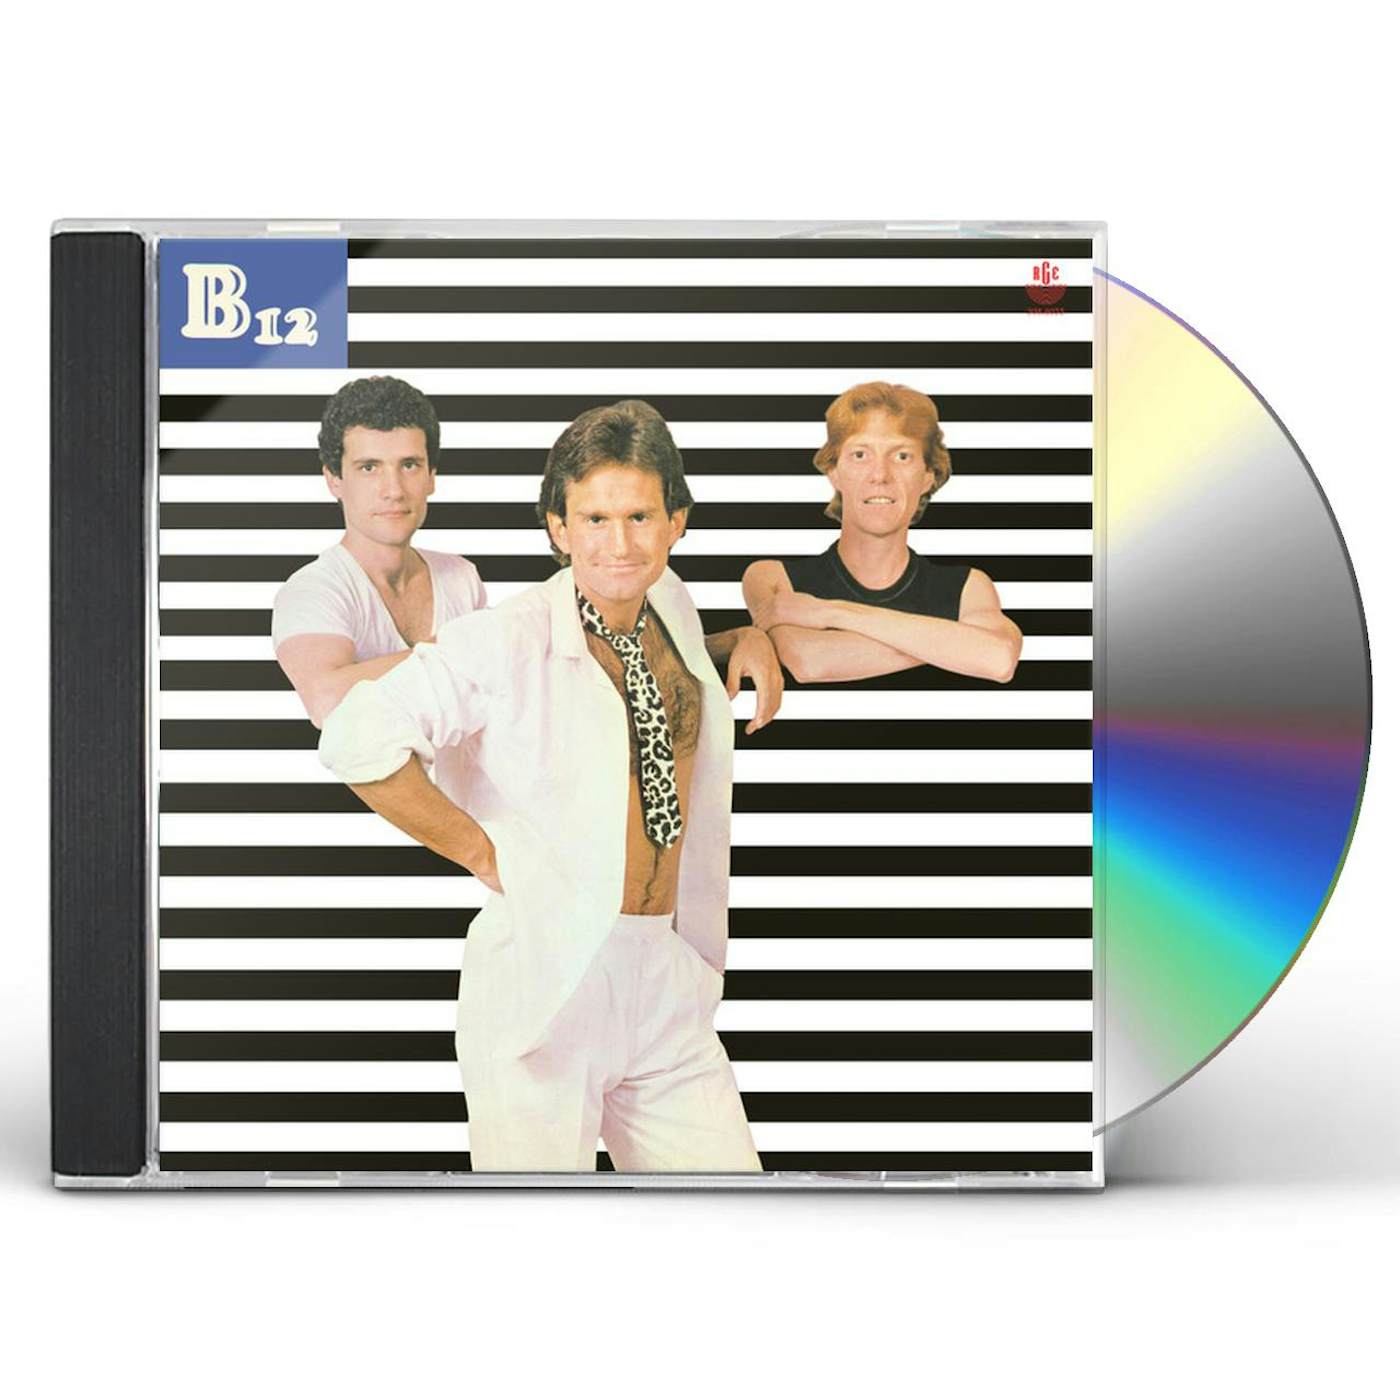 B12 B-12 CD